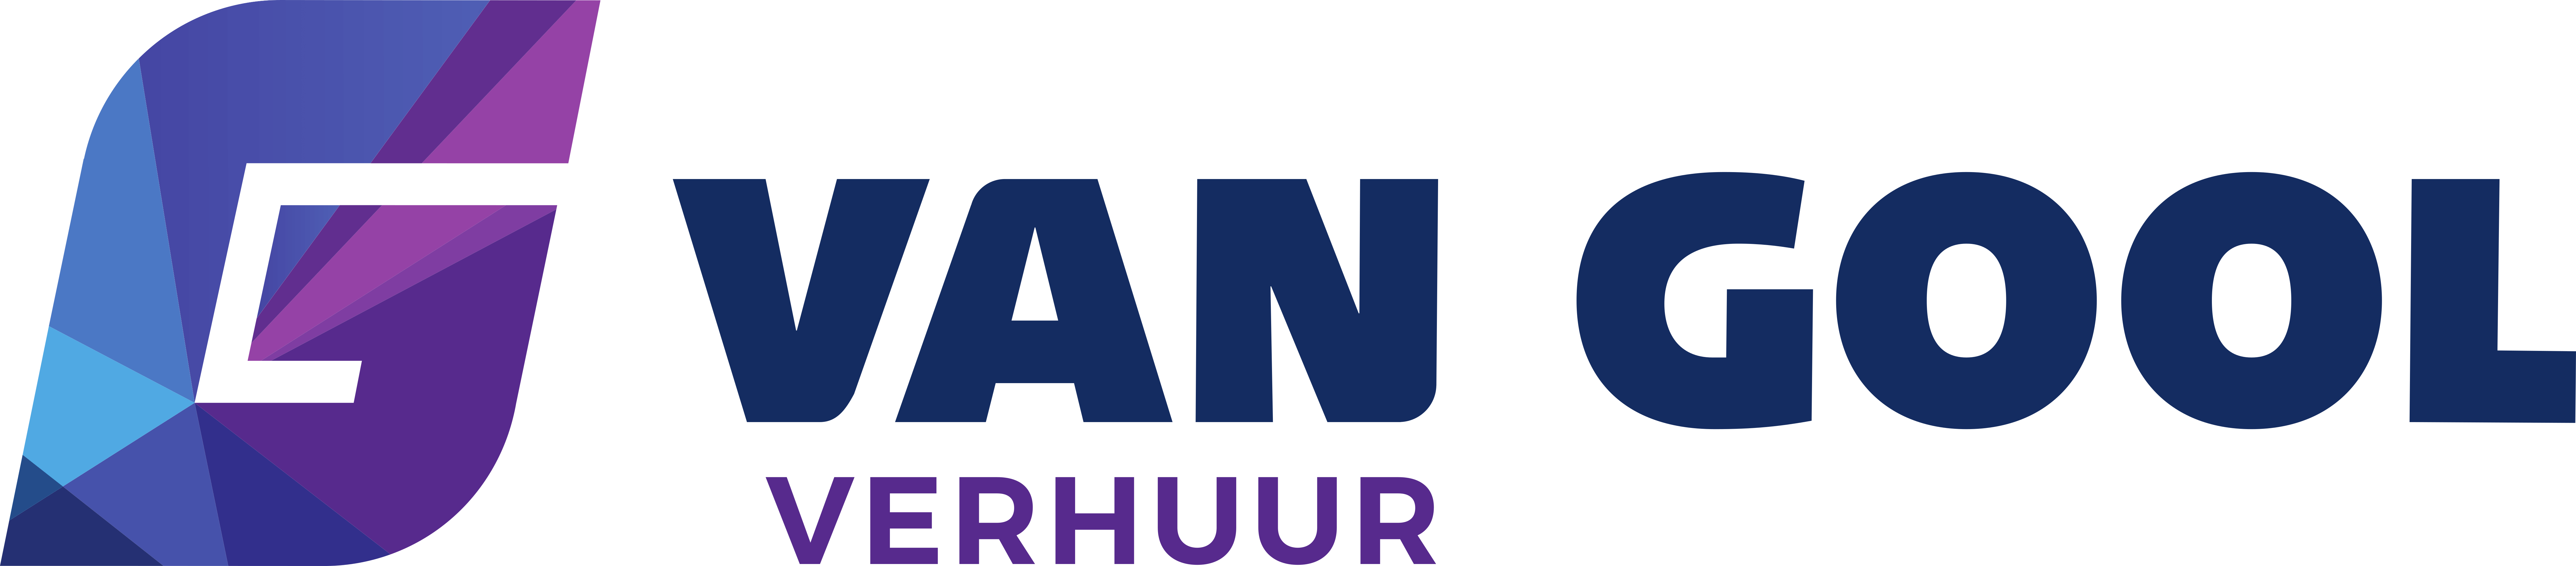 Van Gool Verhuur Logo